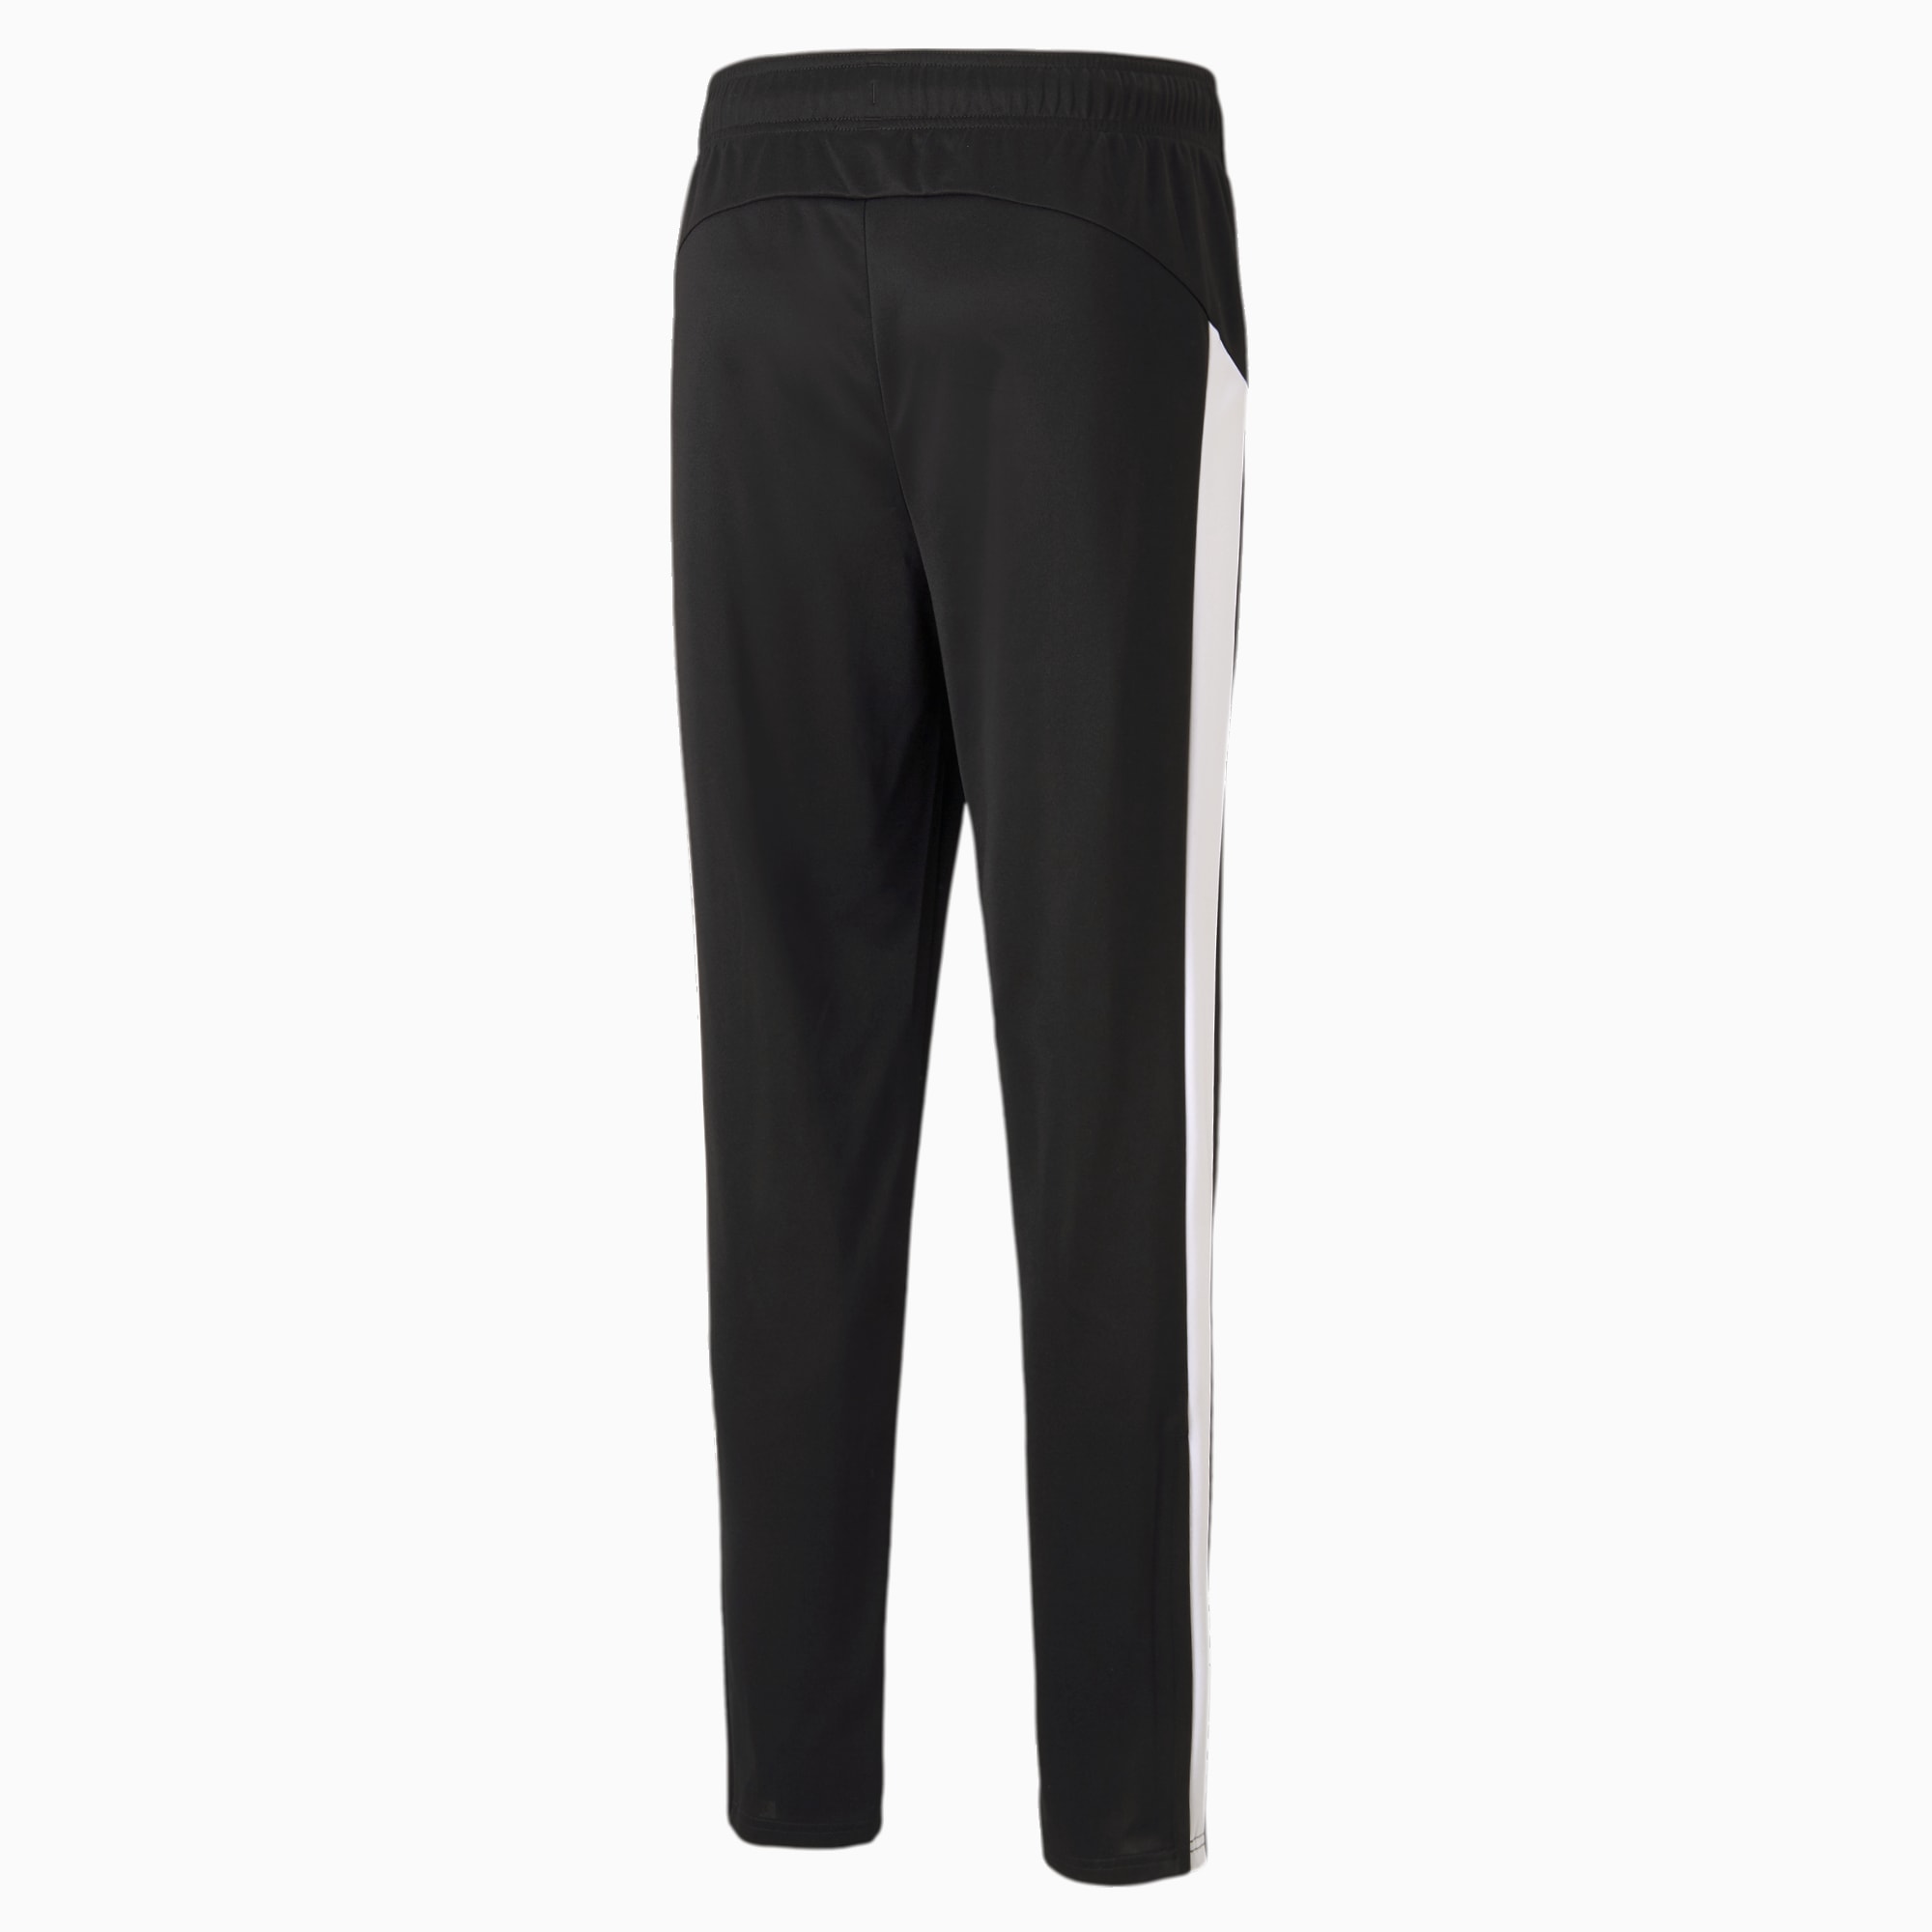 PUMA Active Tricot Men's Sweatpants, Black/White, Size L, Clothing